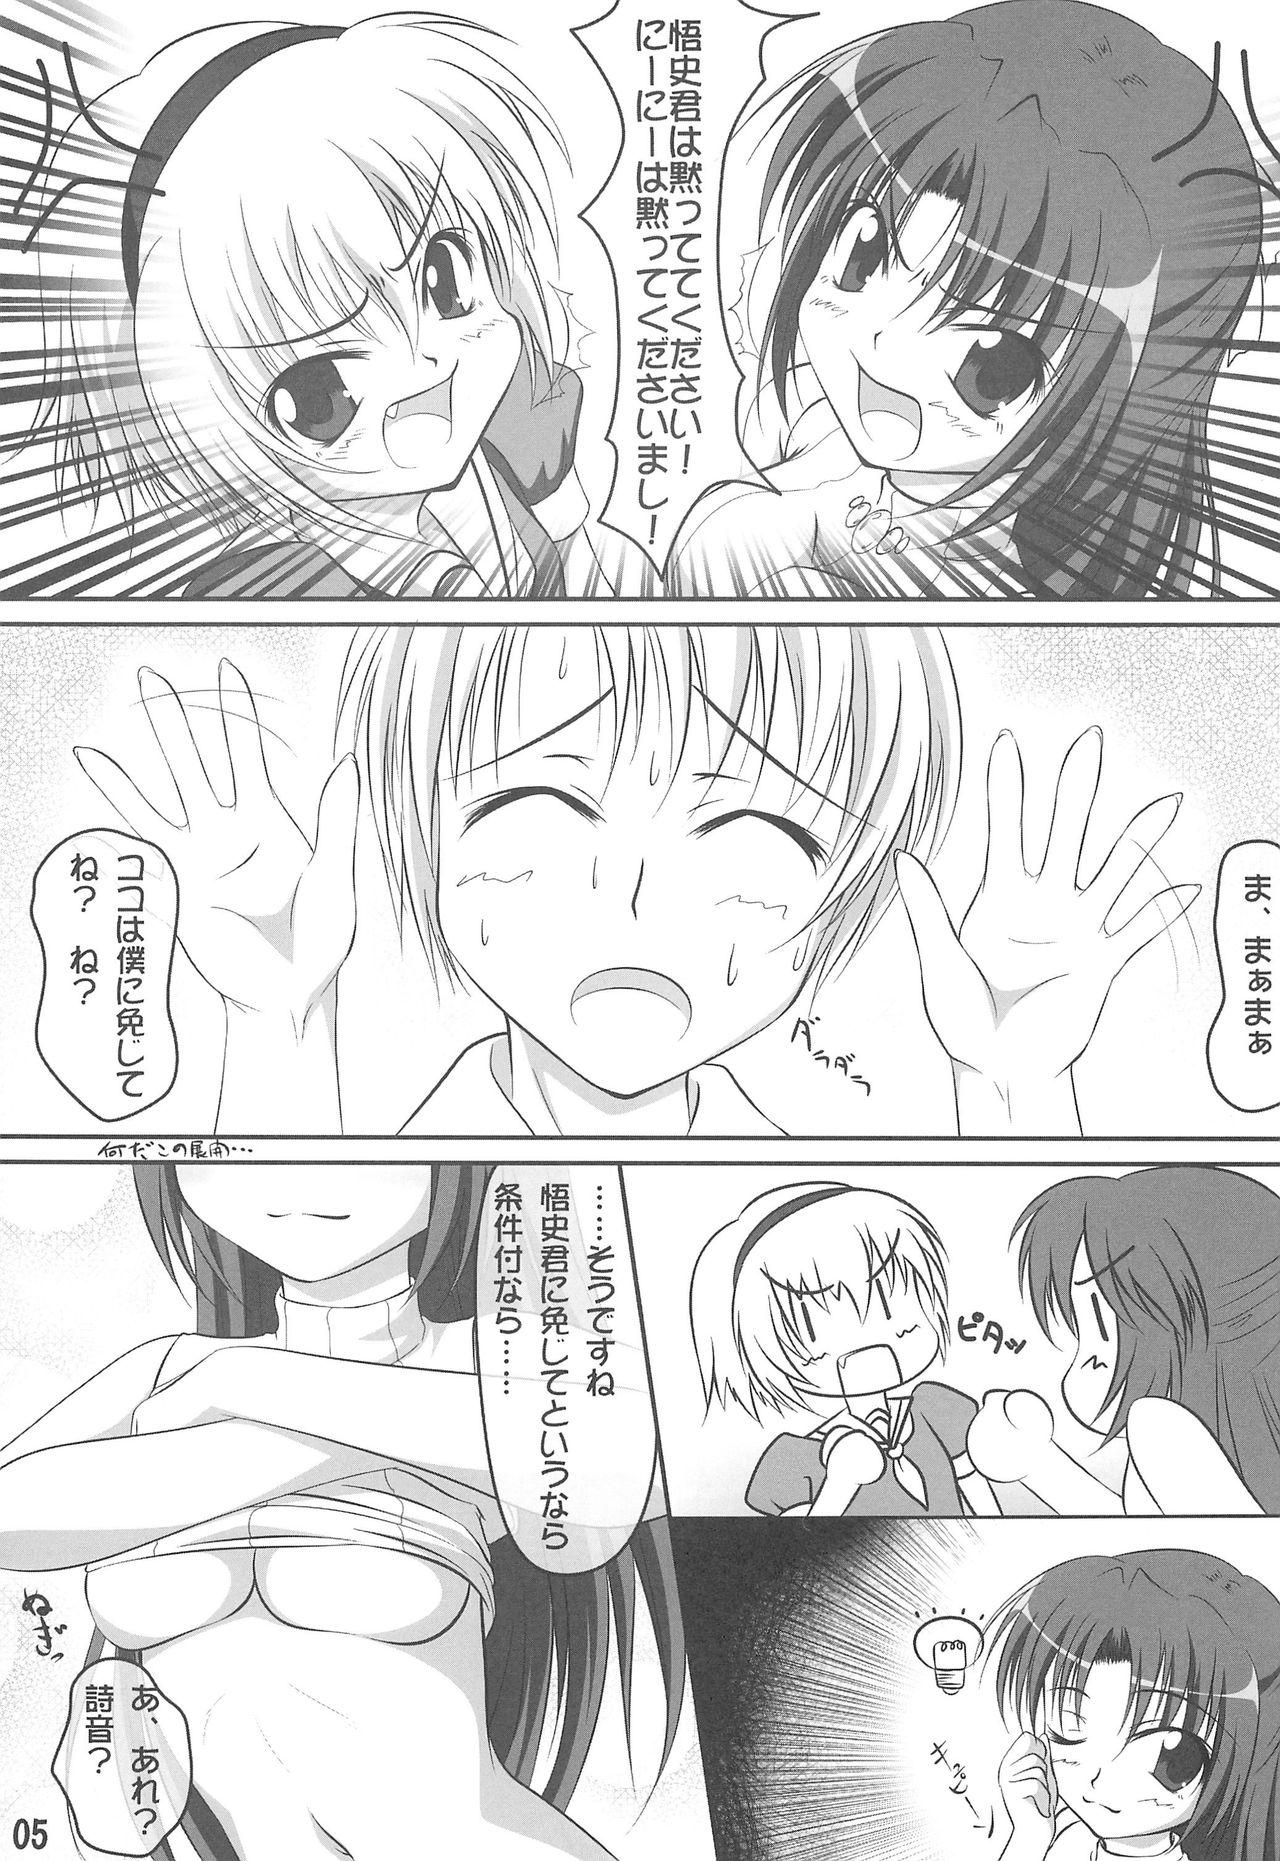 Celeb Double Attack! - Higurashi no naku koro ni Blackmail - Page 4